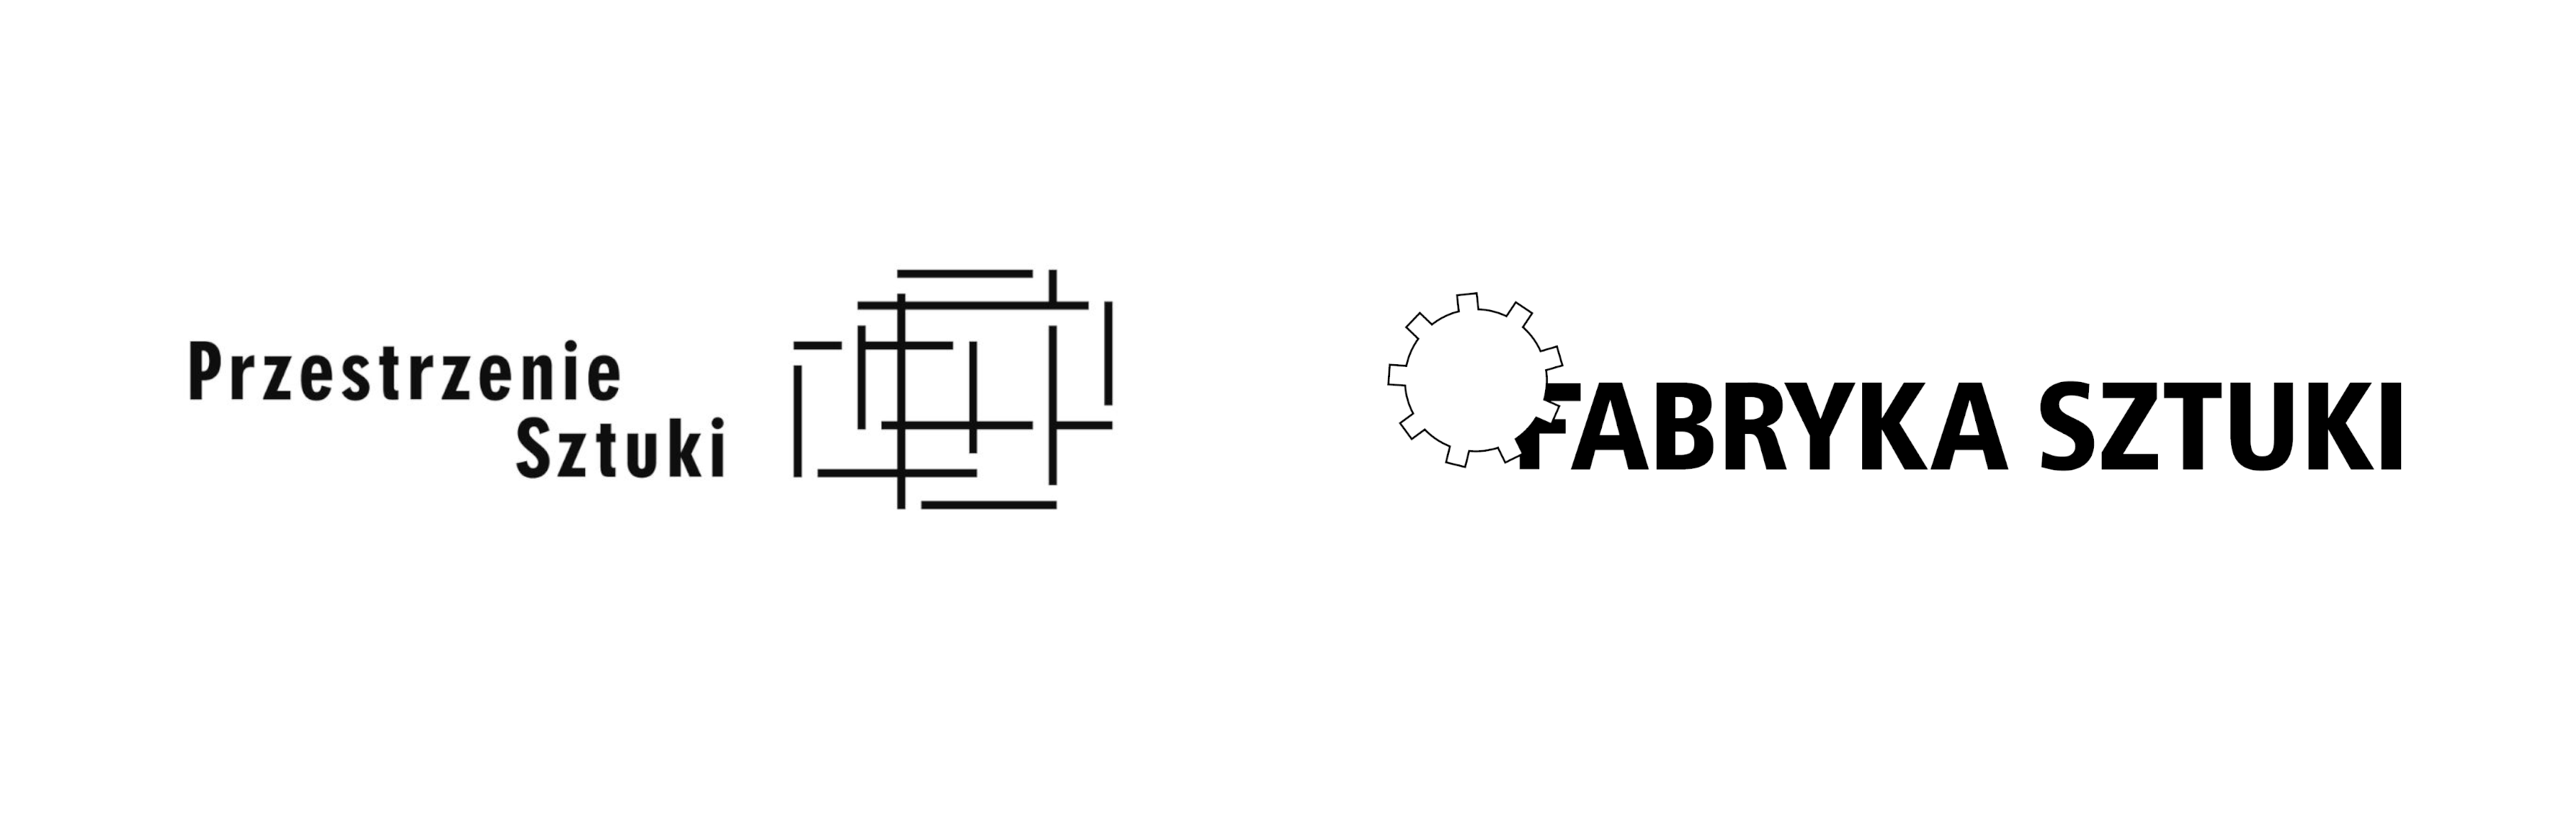 logotypy partnerów fabryka sztuki